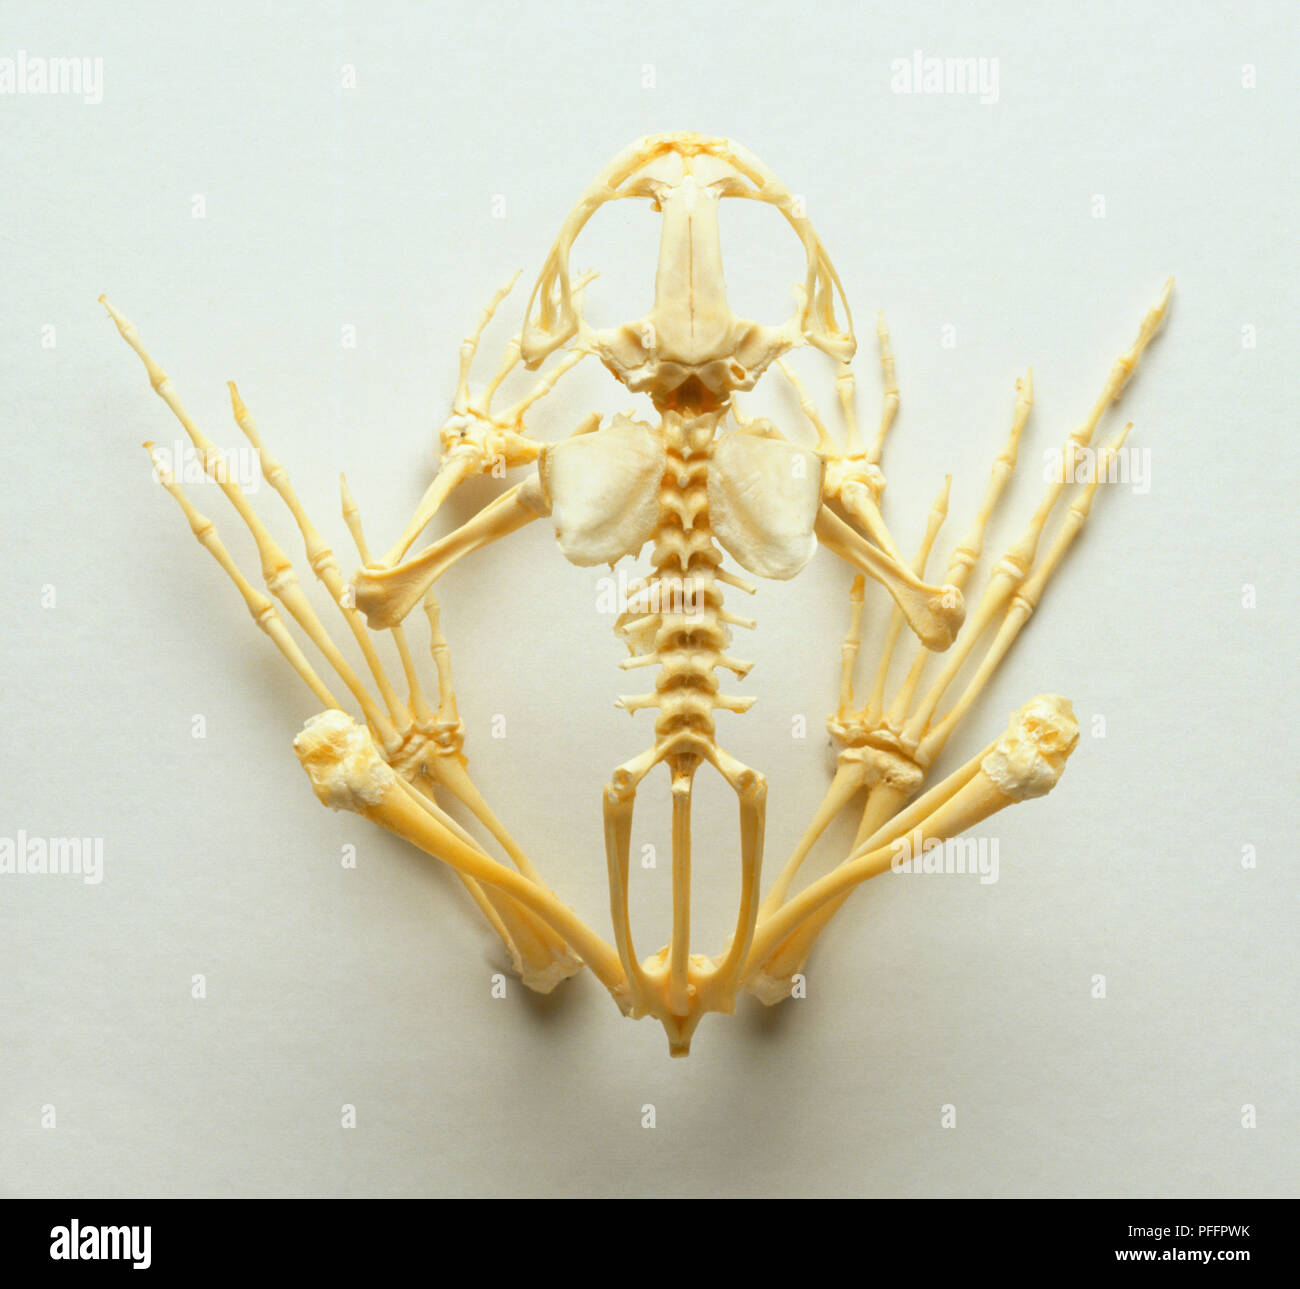 Oben Ansicht von einem Frosch Skelett in Einem hockenden Position  angeordnet Stockfotografie - Alamy